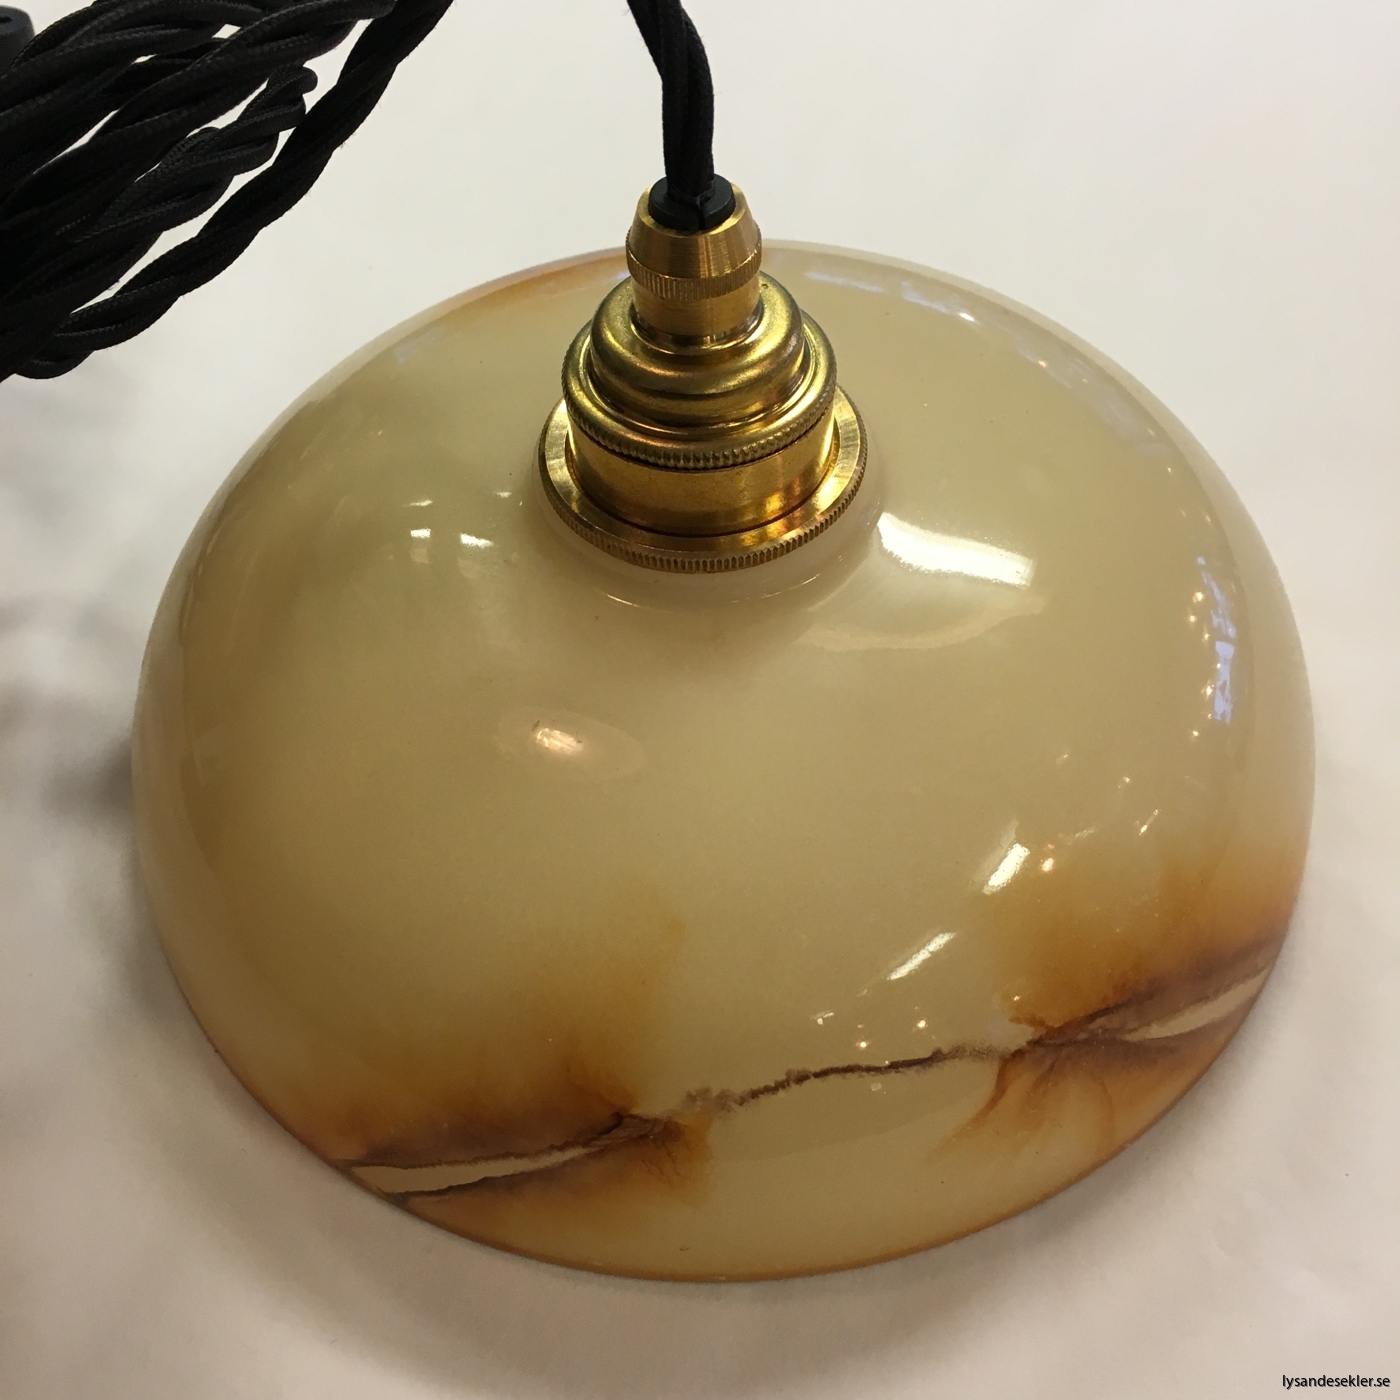 tygsladd textilssladd lampupphäng med 2 ringar utan skruvar för skärm eller glödlampa (6)